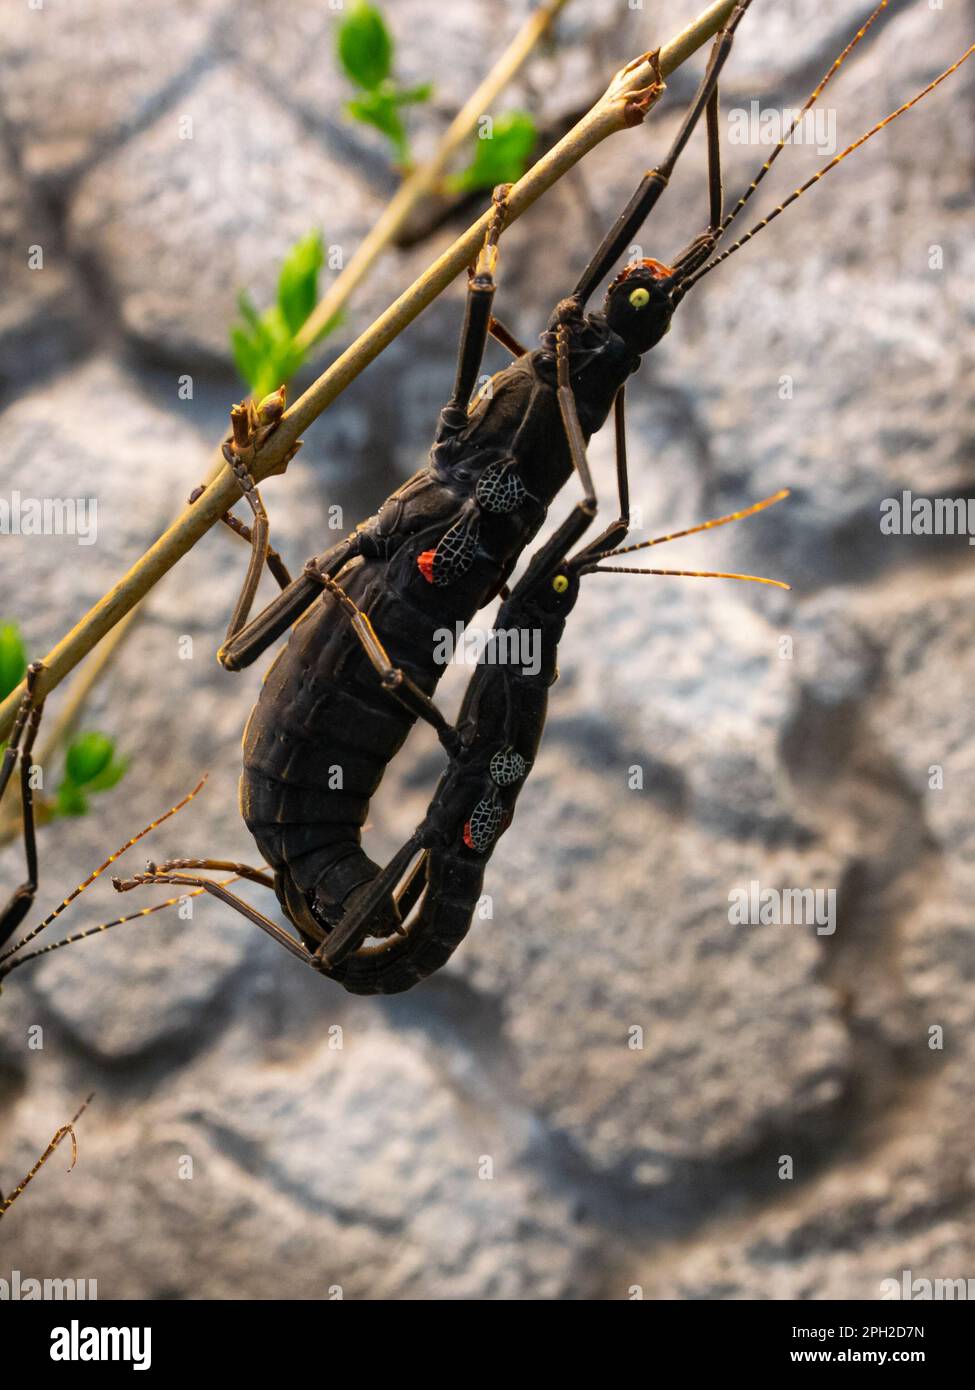 Schwarze Beauty-Stick-Insekten, auch bekannt als Peruphasma schultei, hängen an einem Ast Stockfoto